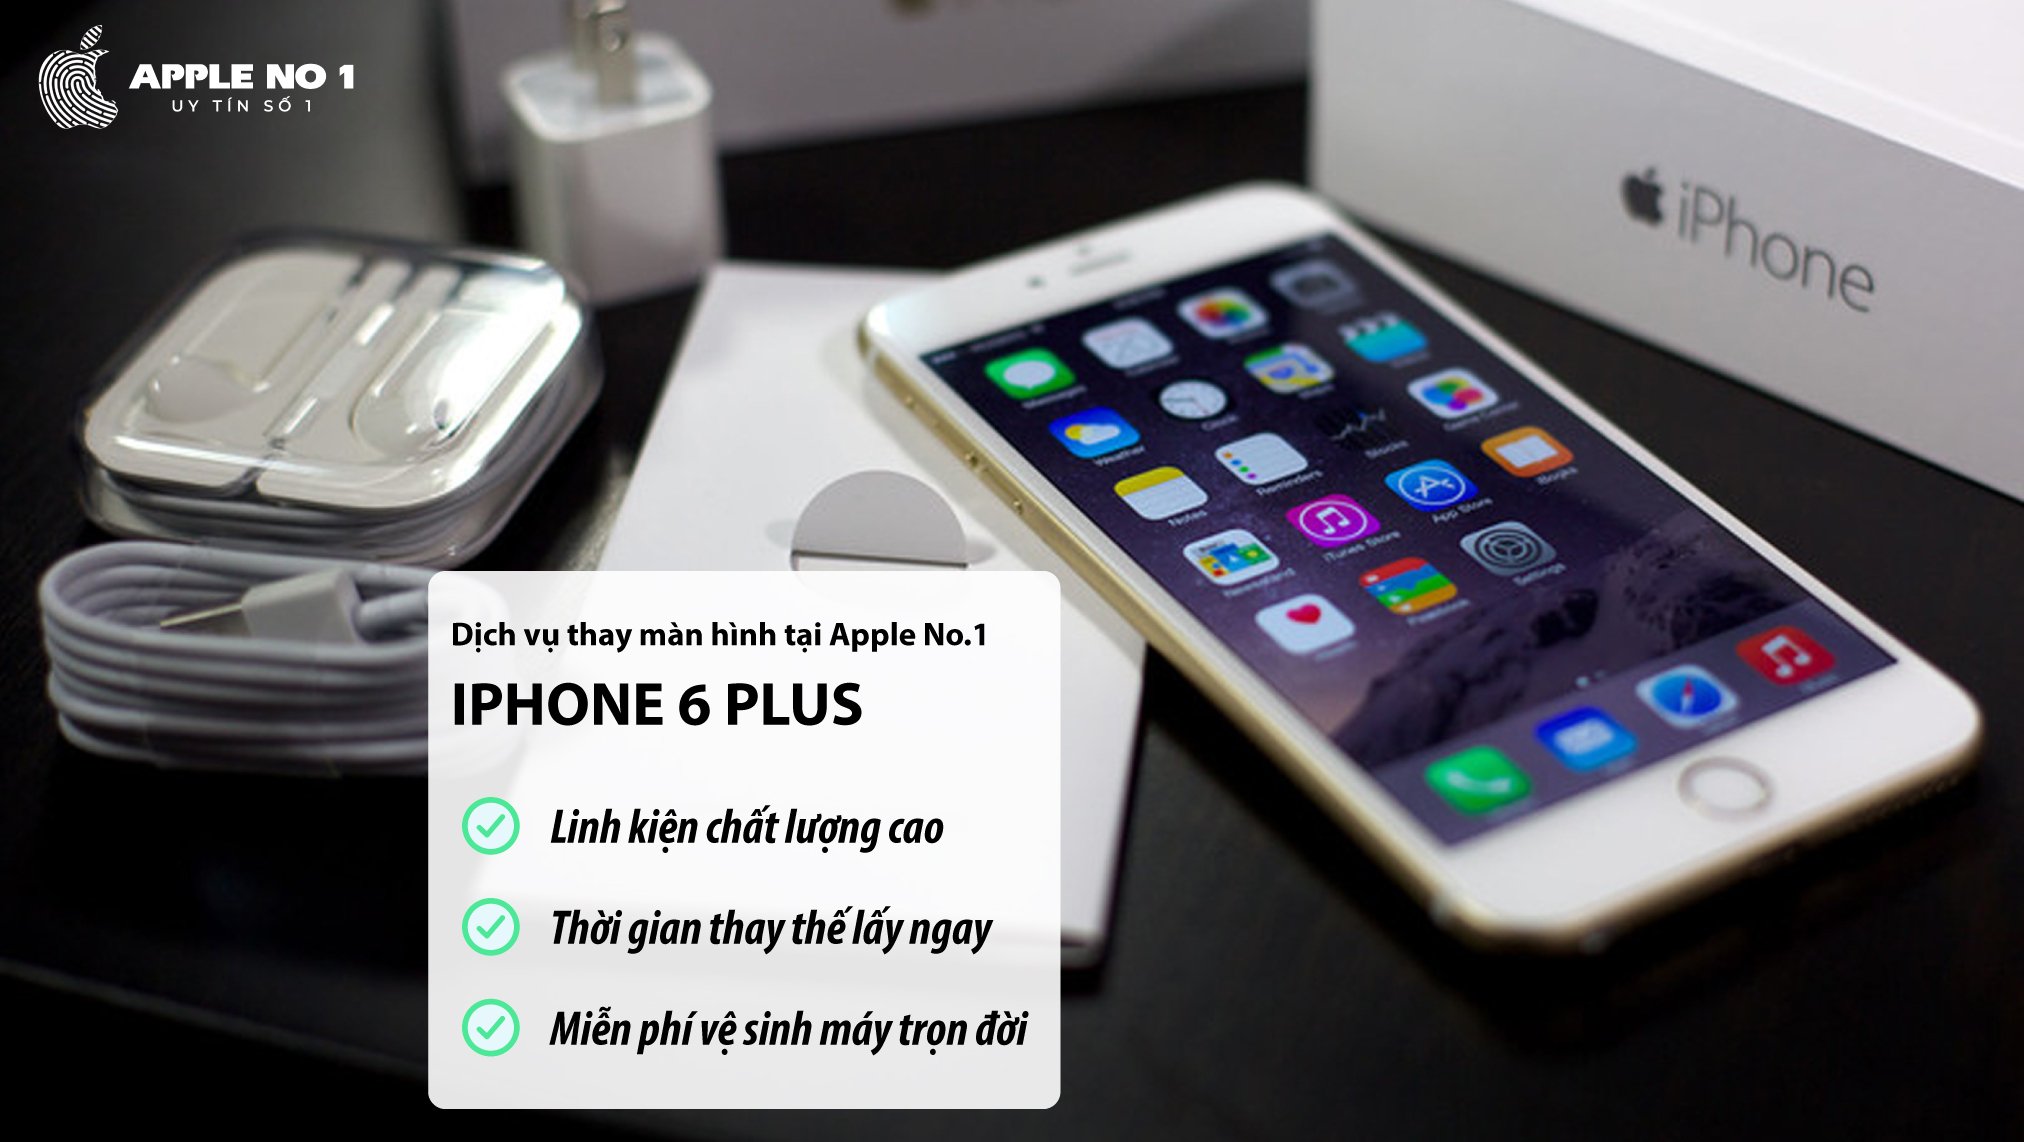 Dịch vụ thay màn hình iPhone 6 Plus tại Apple No.1